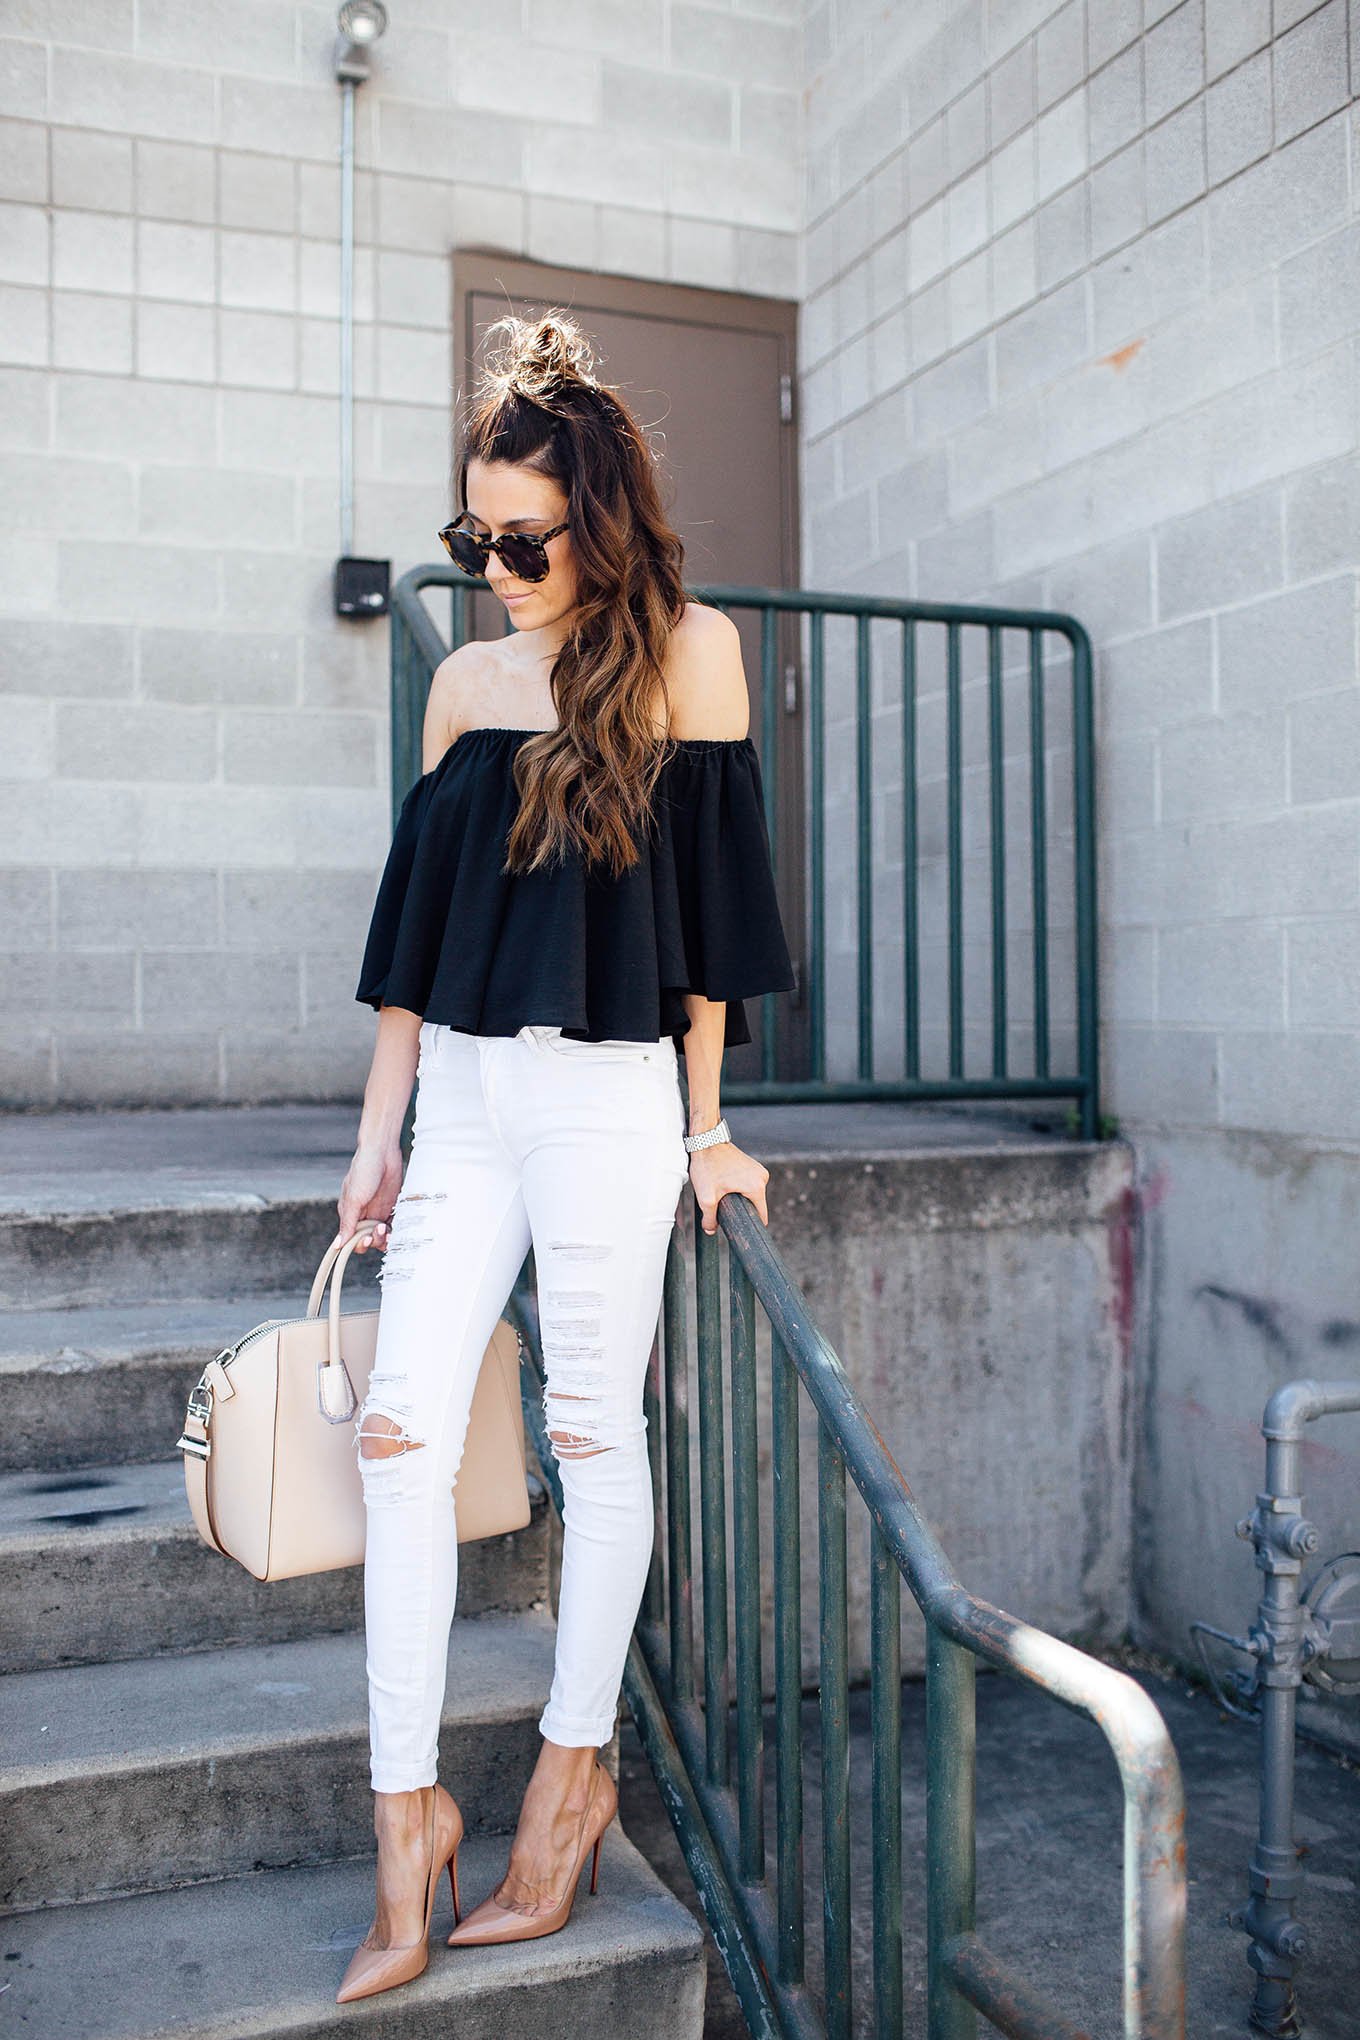 Moda: 7 ideas para combinar los jeans blancos en media estación